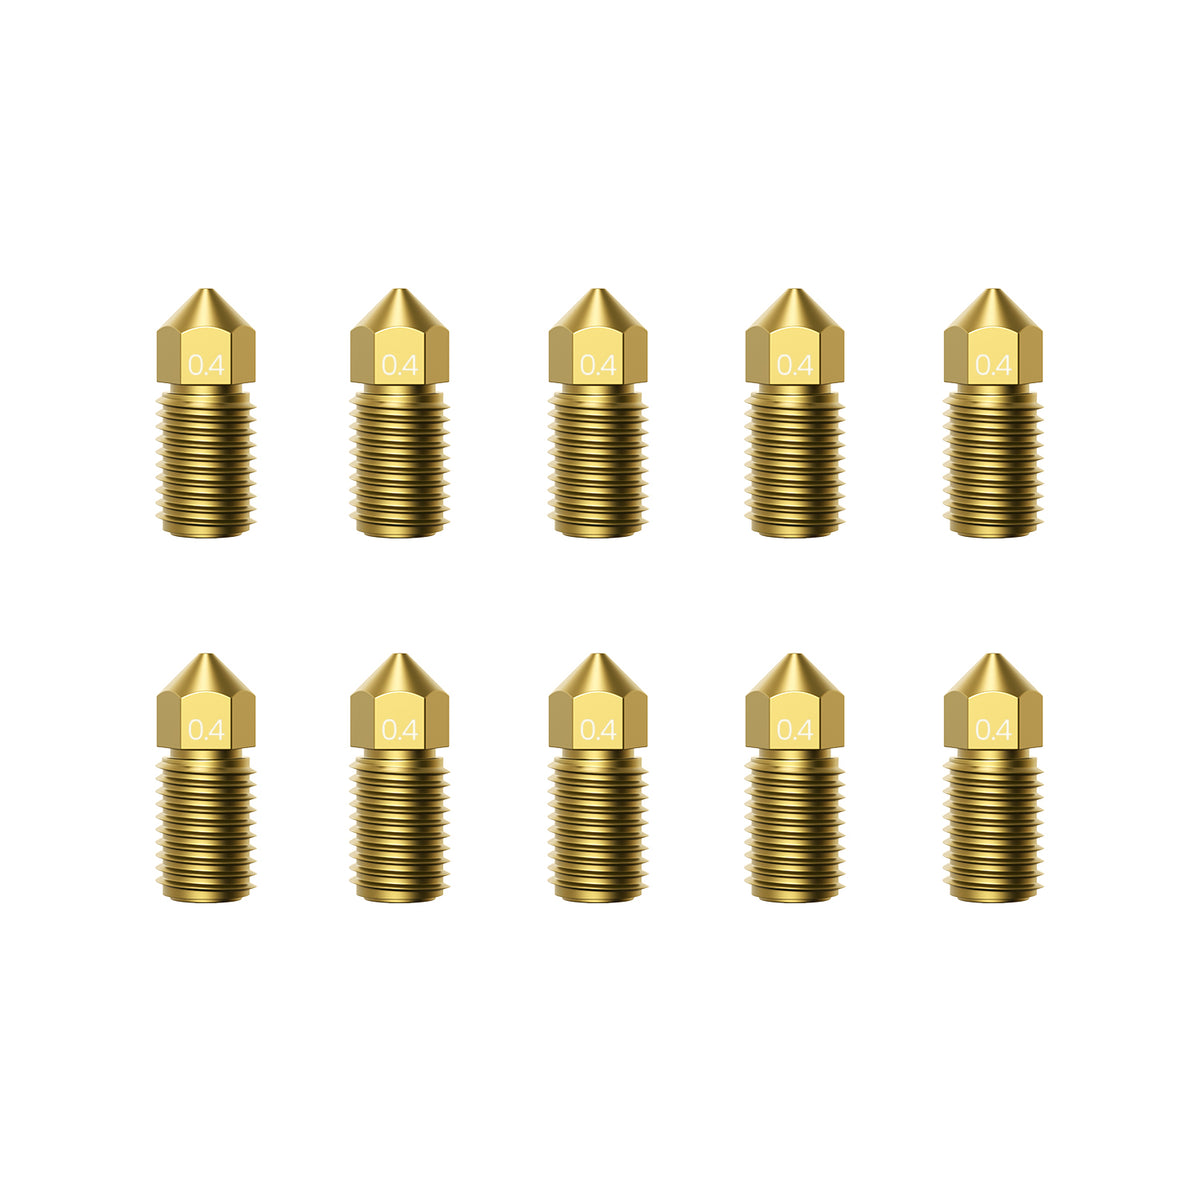 10-Pack Nozzle Kit (0.4mm, M5/M5C)